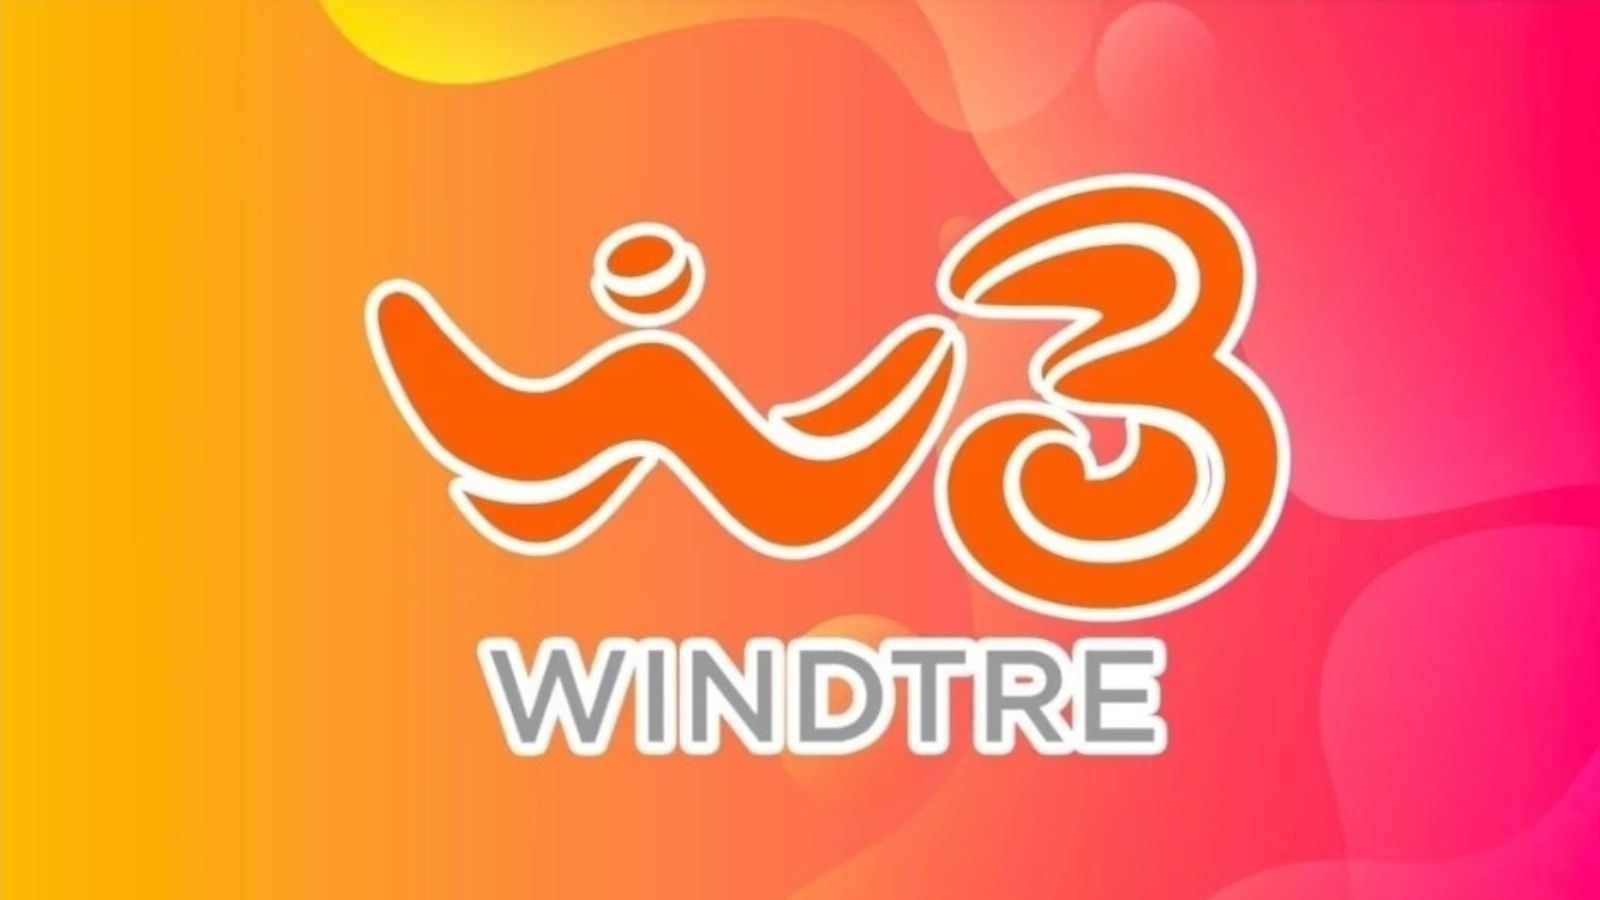 WindTre GO Digital nuove offerte 